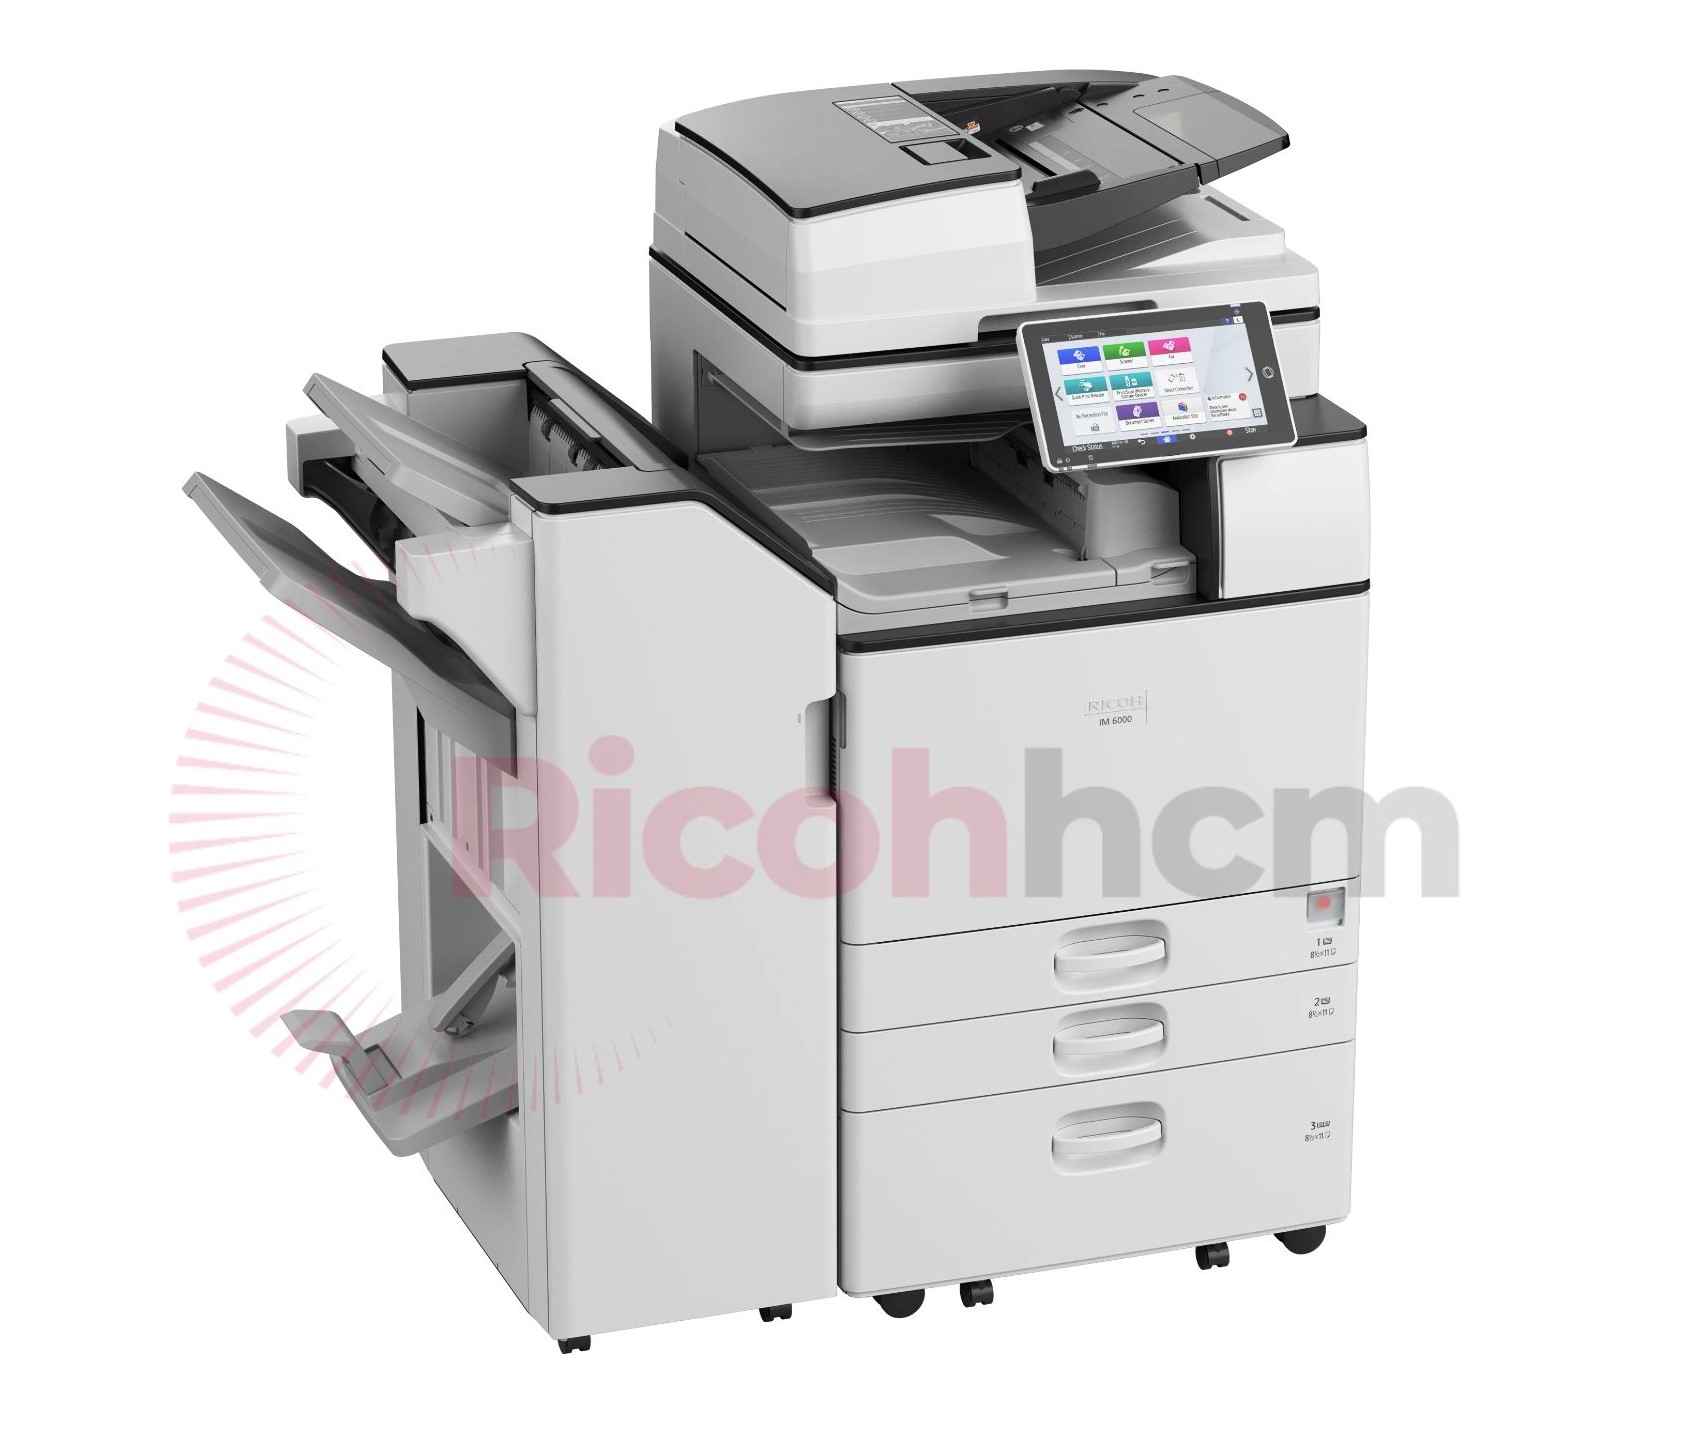 RICOHHCM – nơi bán máy photocopy thành phố Long Khánh chất lượng cam kết: hỗ trợ trực tuyến 24/7, kịp thời xử lý, nguồn máy với số lượng lớn, máy mới, hàng chính hãng cam kết 100%.